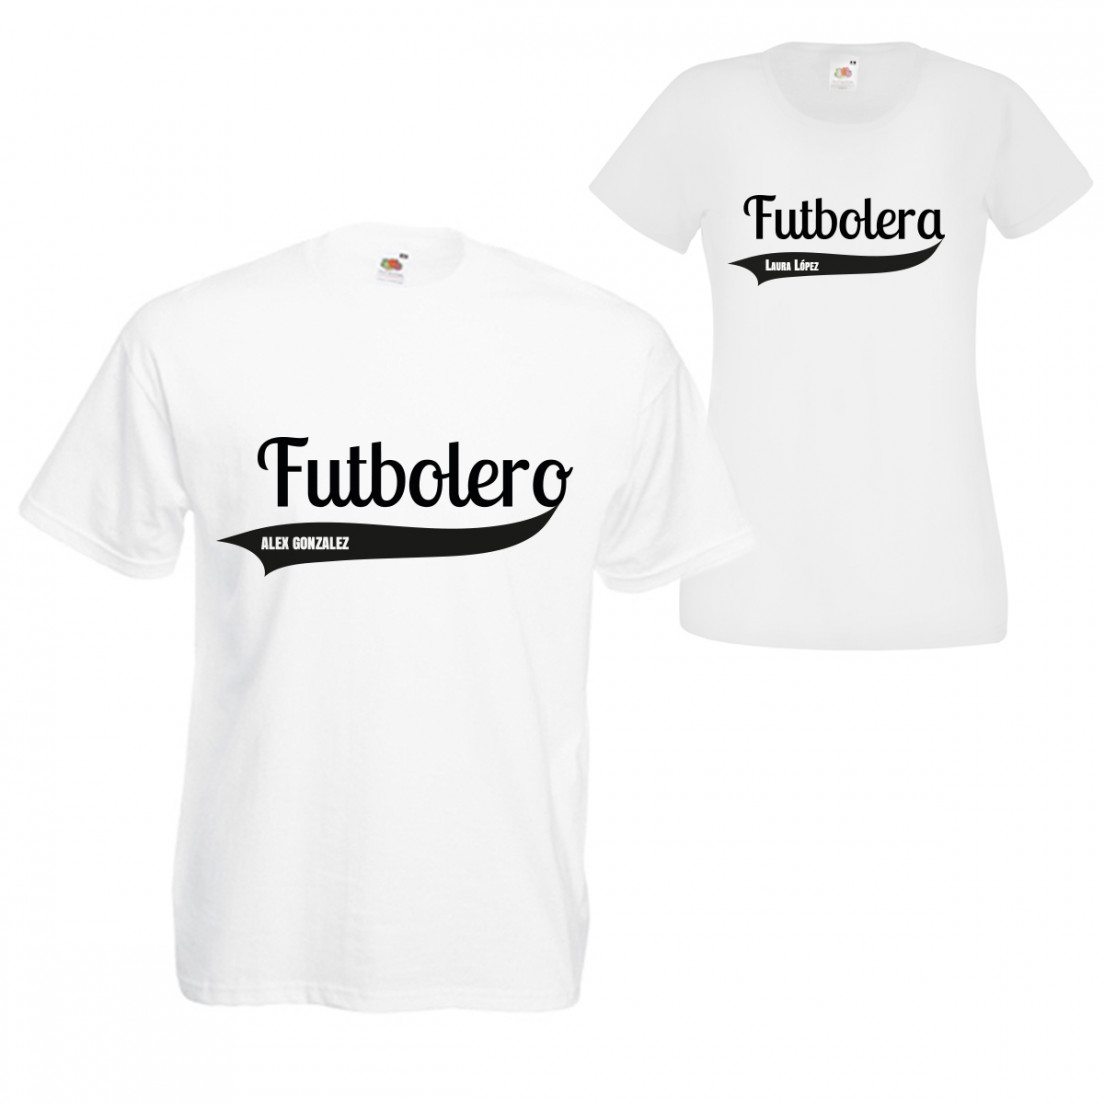 Camiseta con nombre - Para fans del fútbol